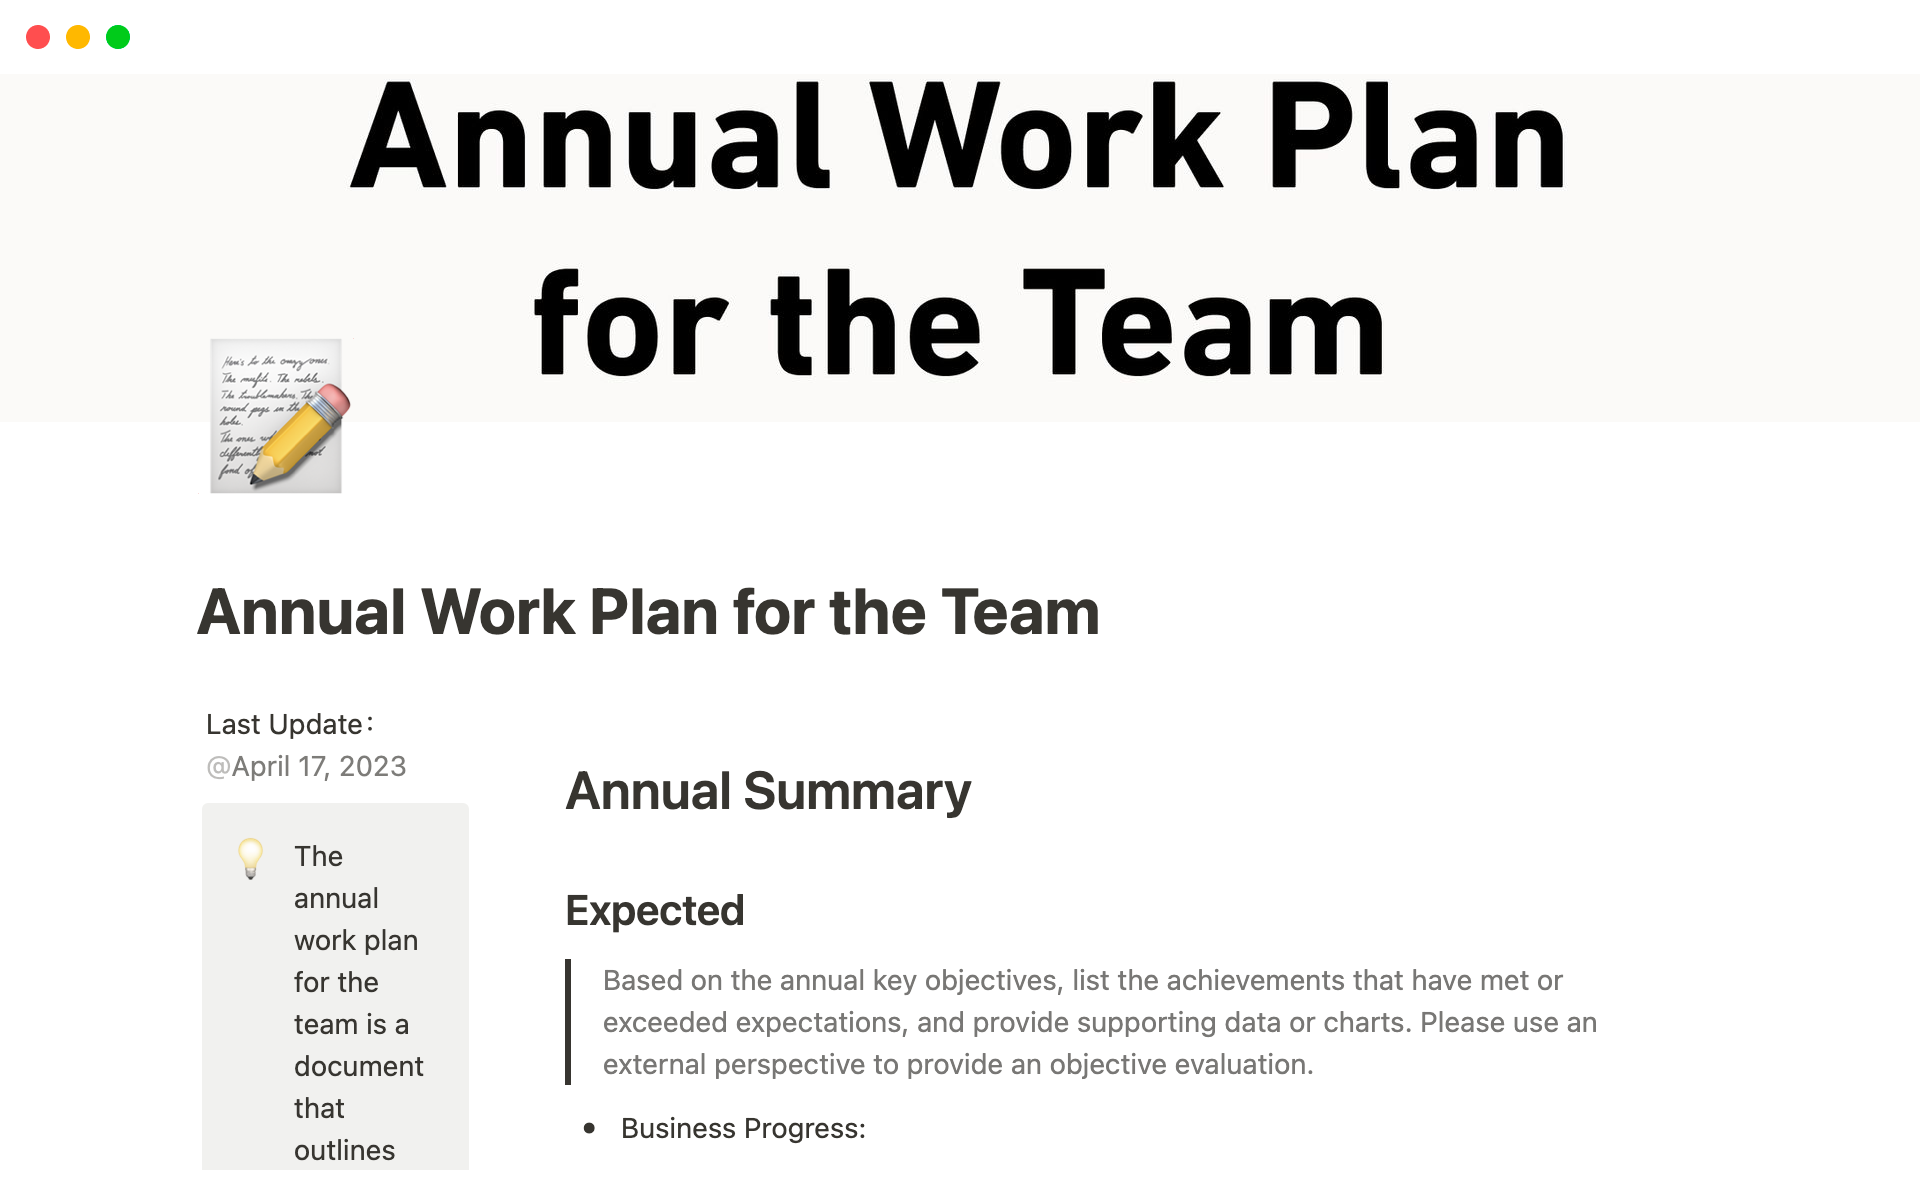 Uma prévia do modelo para Annual Work Plan for the Team